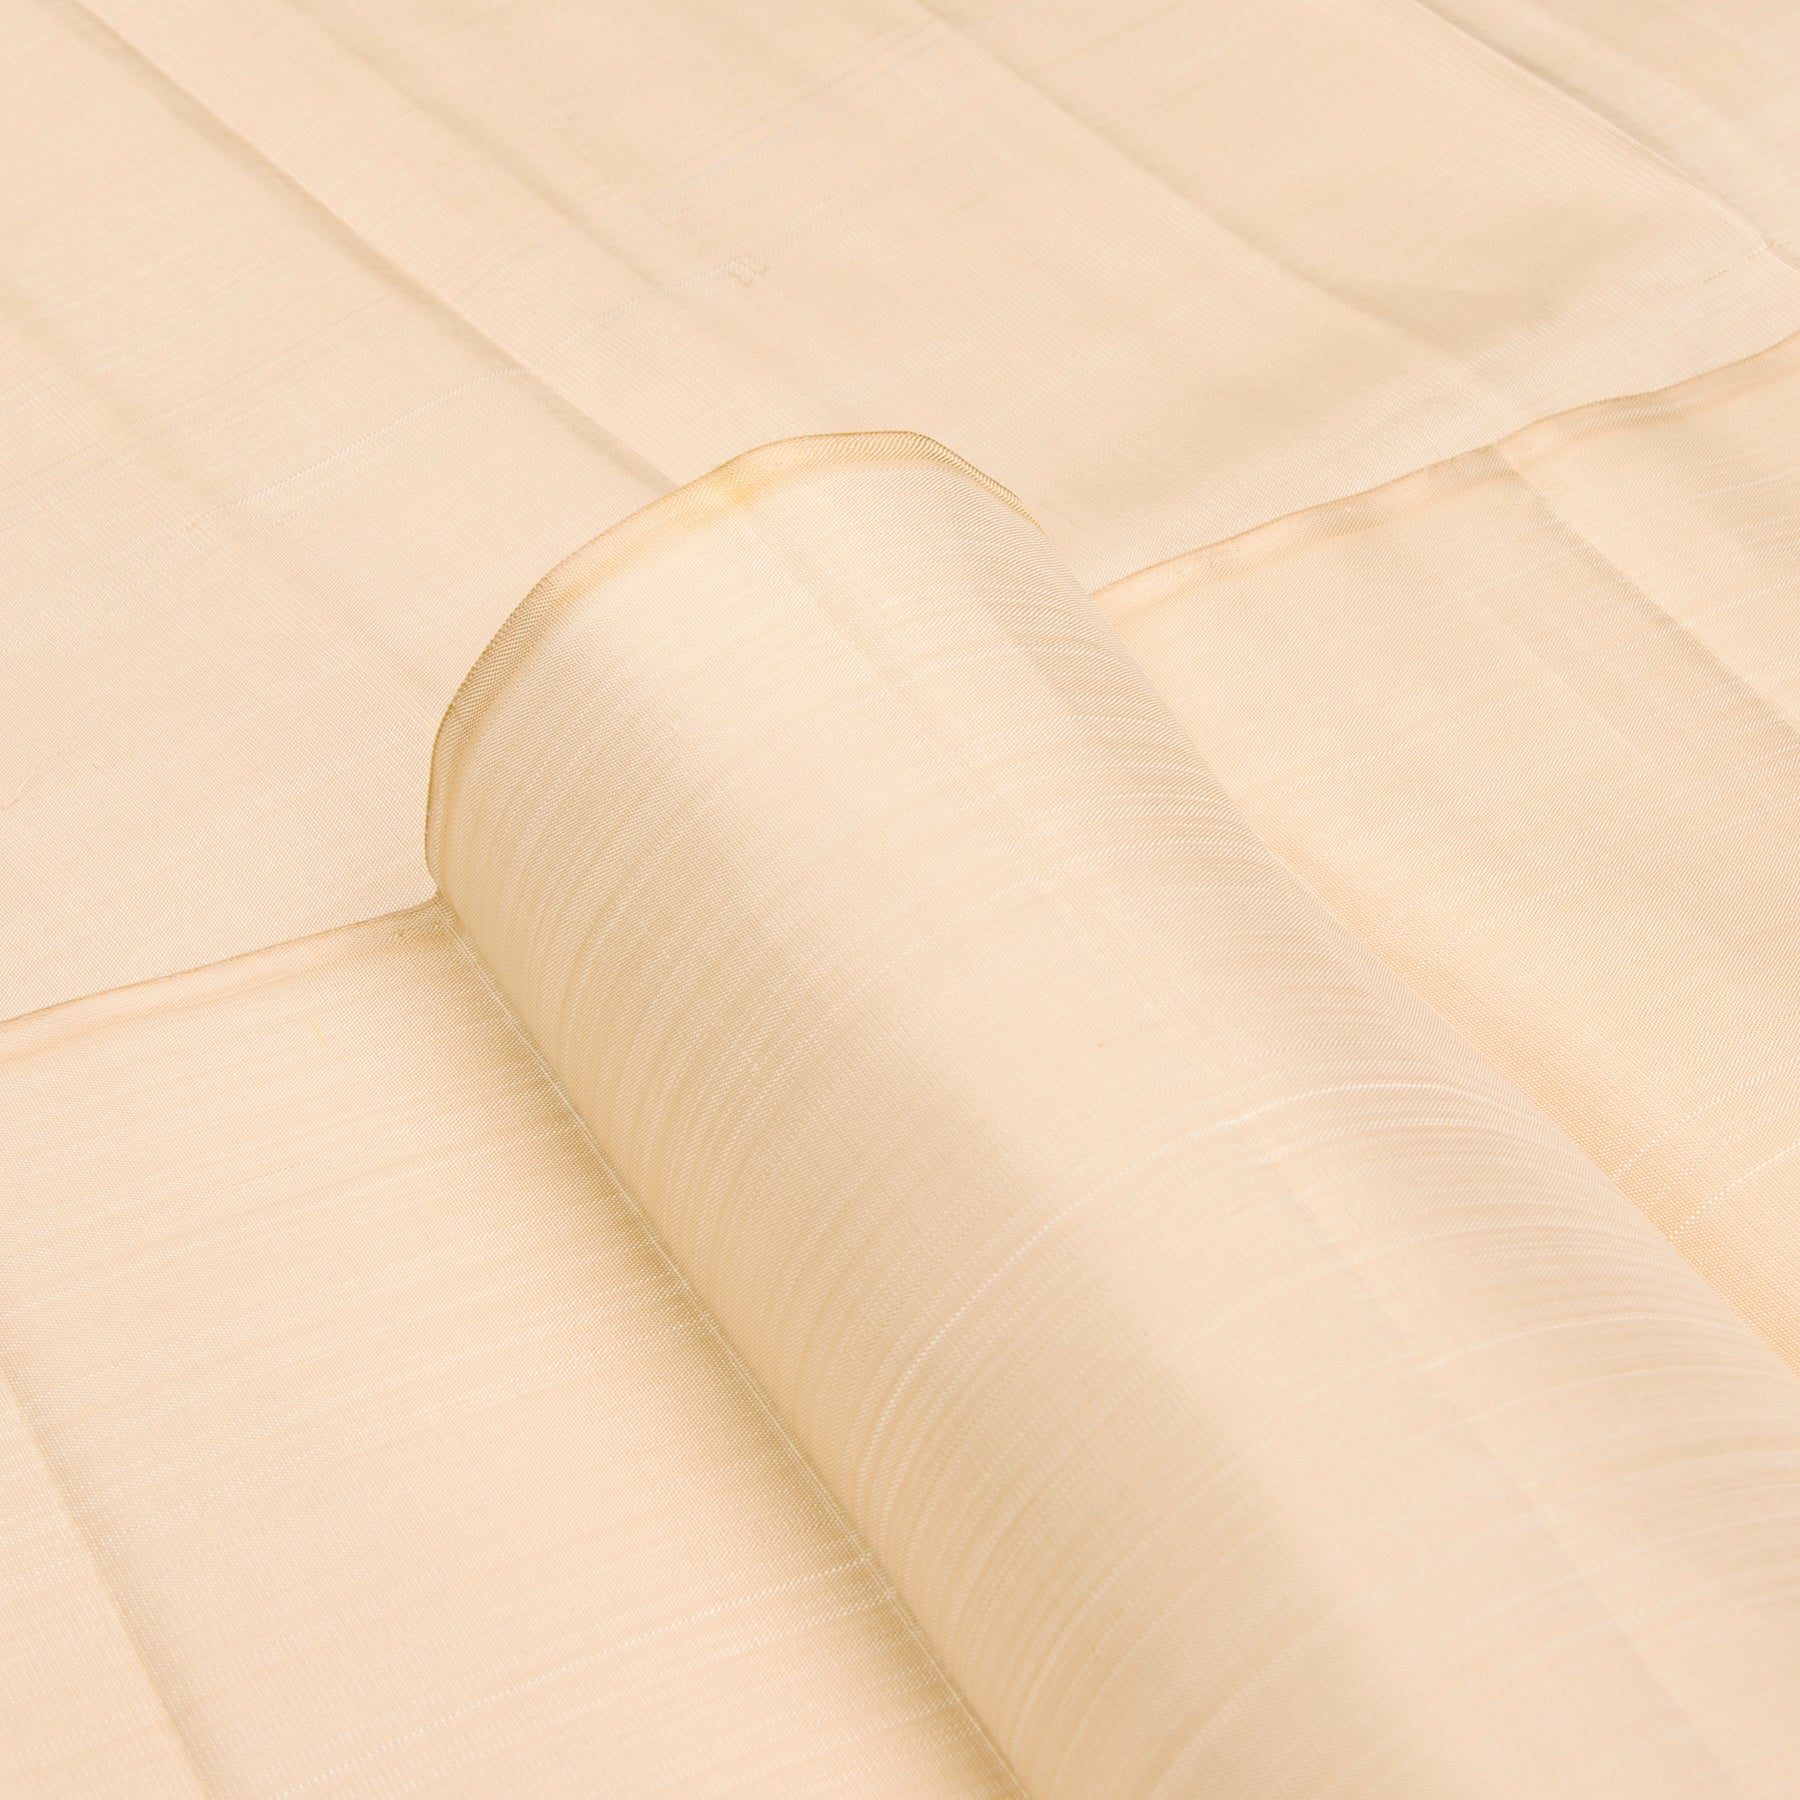 Kanakavalli Kanjivaram Silk Fabric Length 23-110-HF001-08382 - Profile View